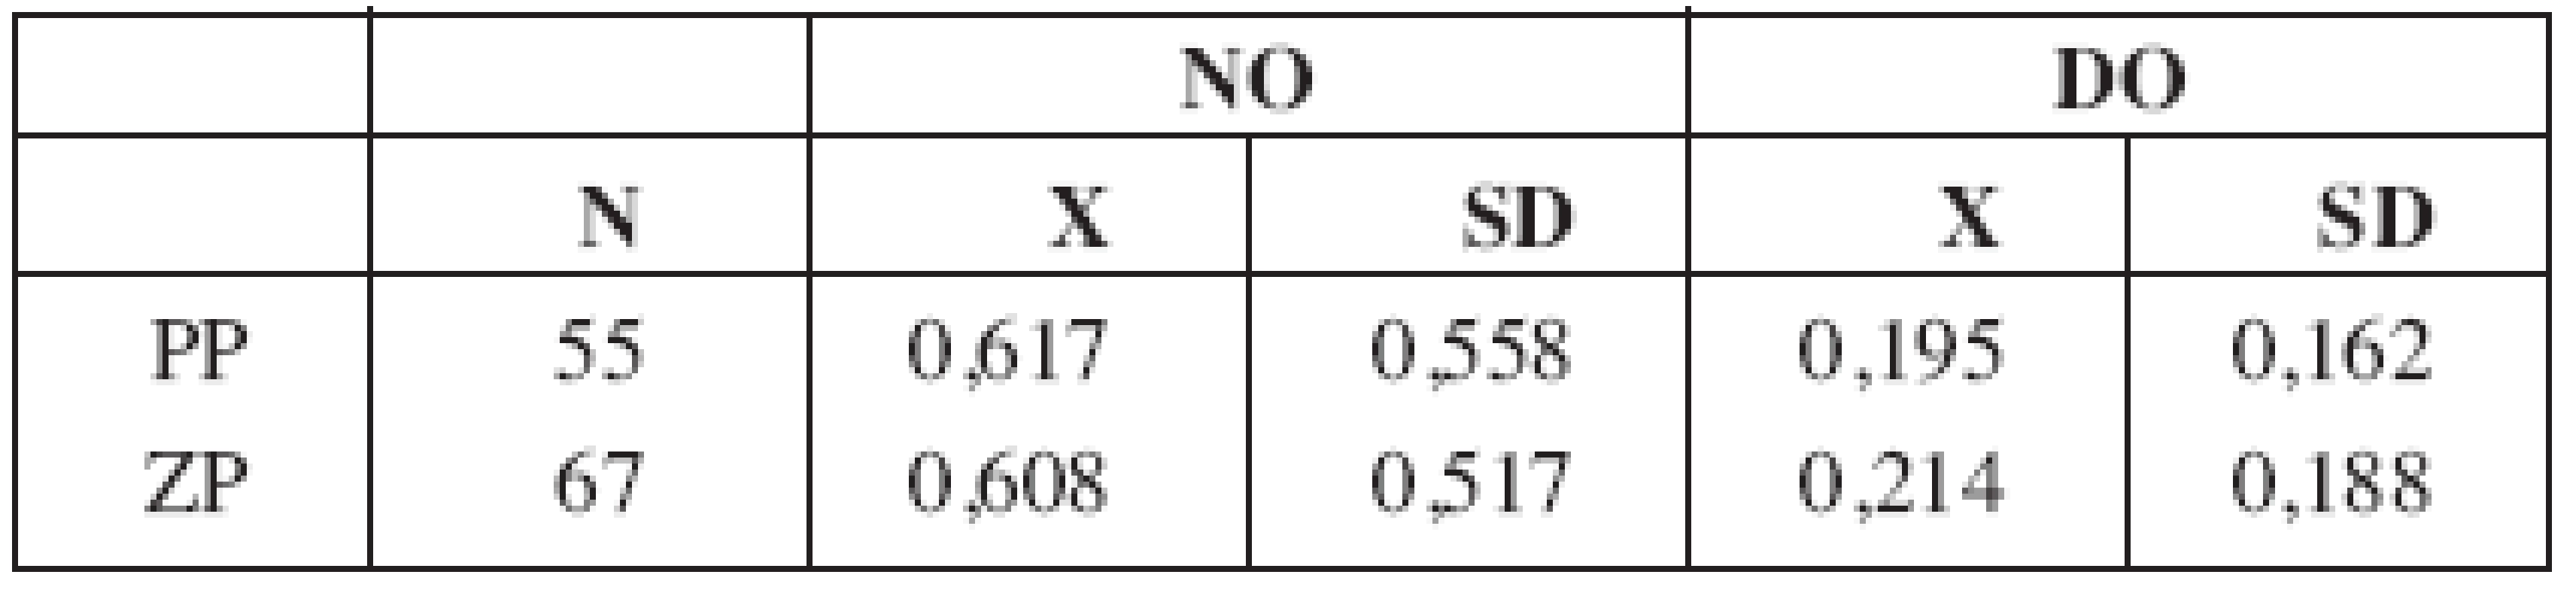 Popisná statistika pro parametr plocha protruze v sagitální rovině (cm2).